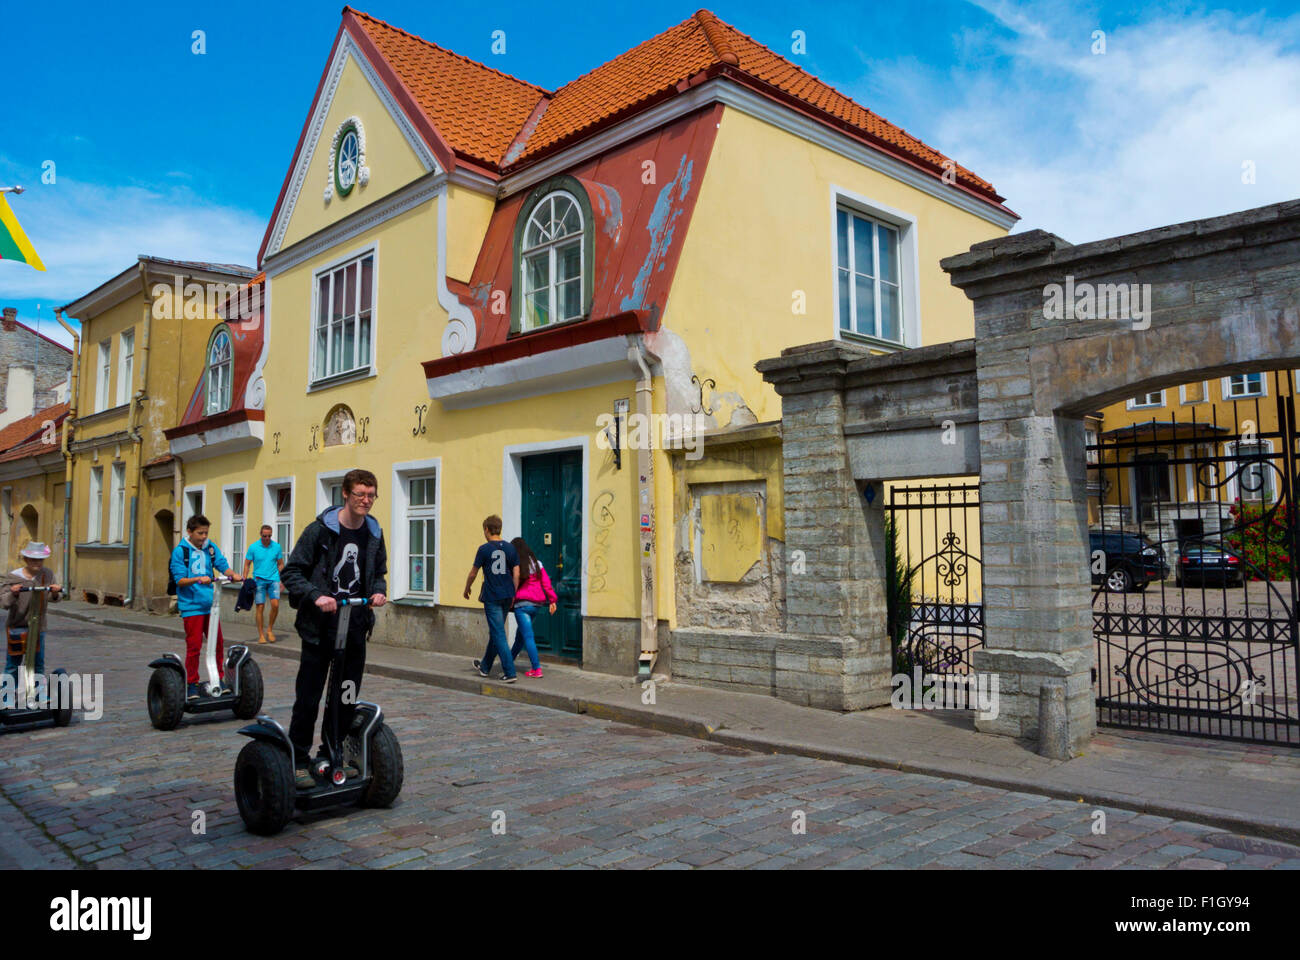 Segways, Vanalinn, old town, Tallinn, Harju county, Estonia, Europe Stock Photo